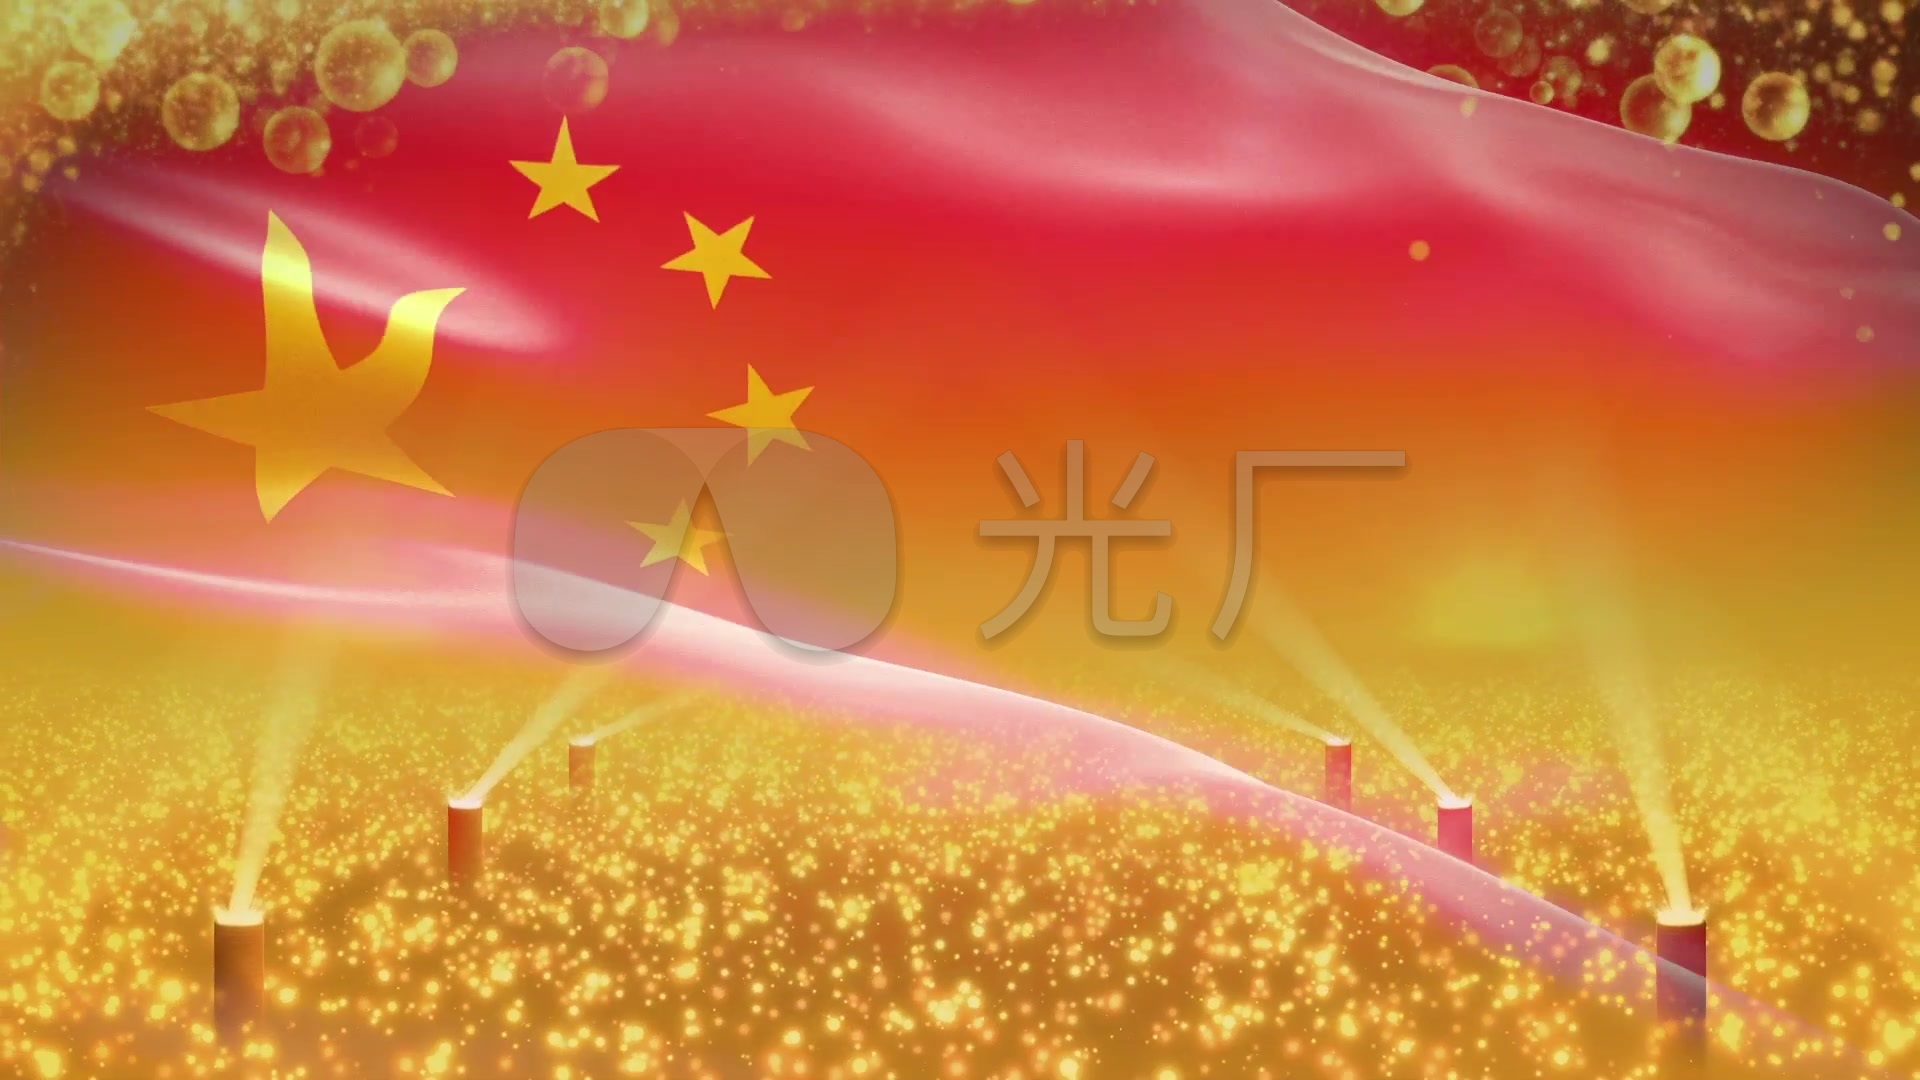 视频素材 舞台背景 中国风背景 红旗飘飘原创高潮部分  来自视频原始